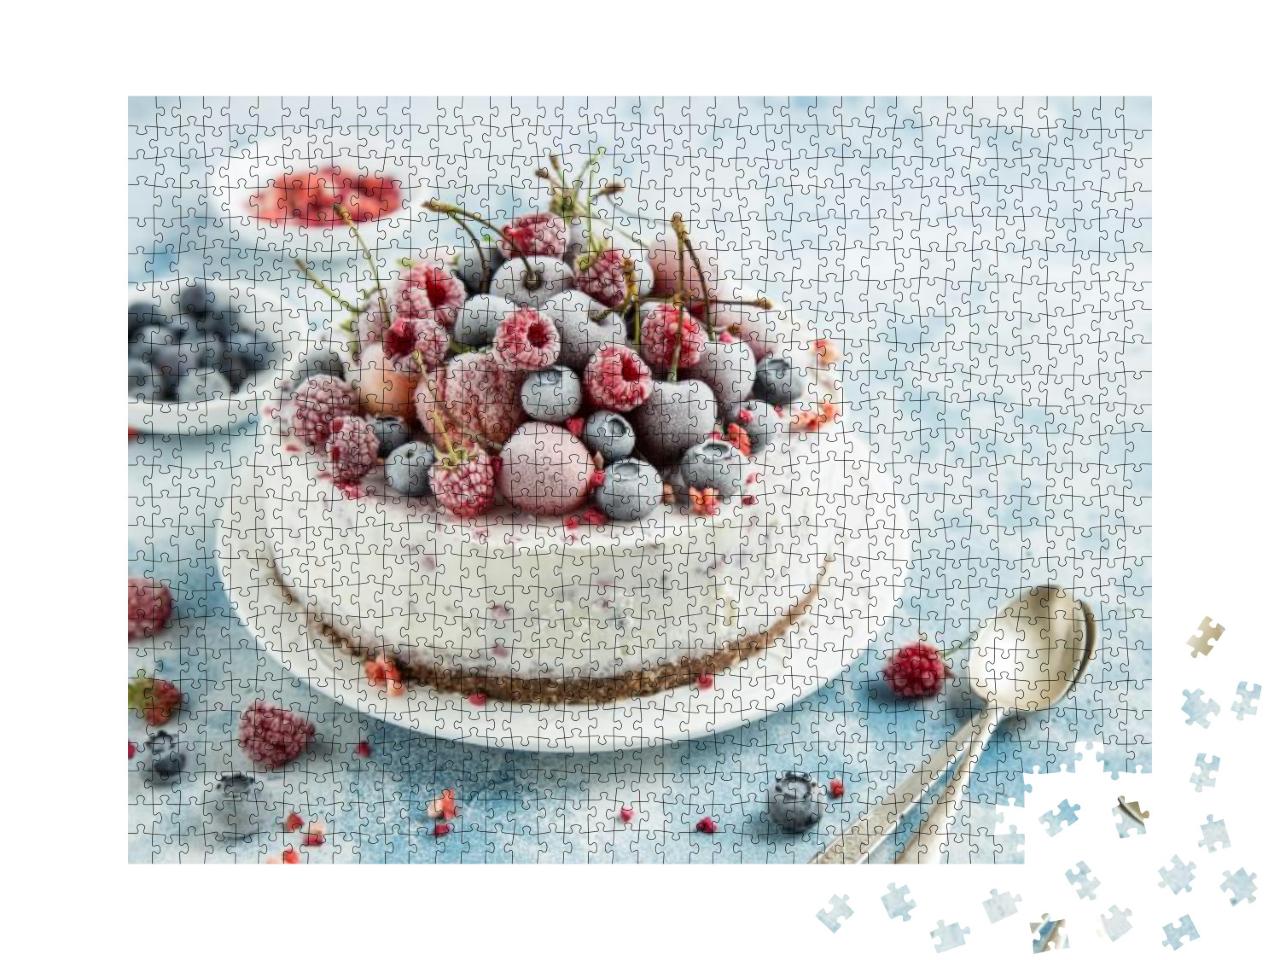 Puzzle 1000 Teile „Köstliche Eistorte mit gefrorenen Beeren“